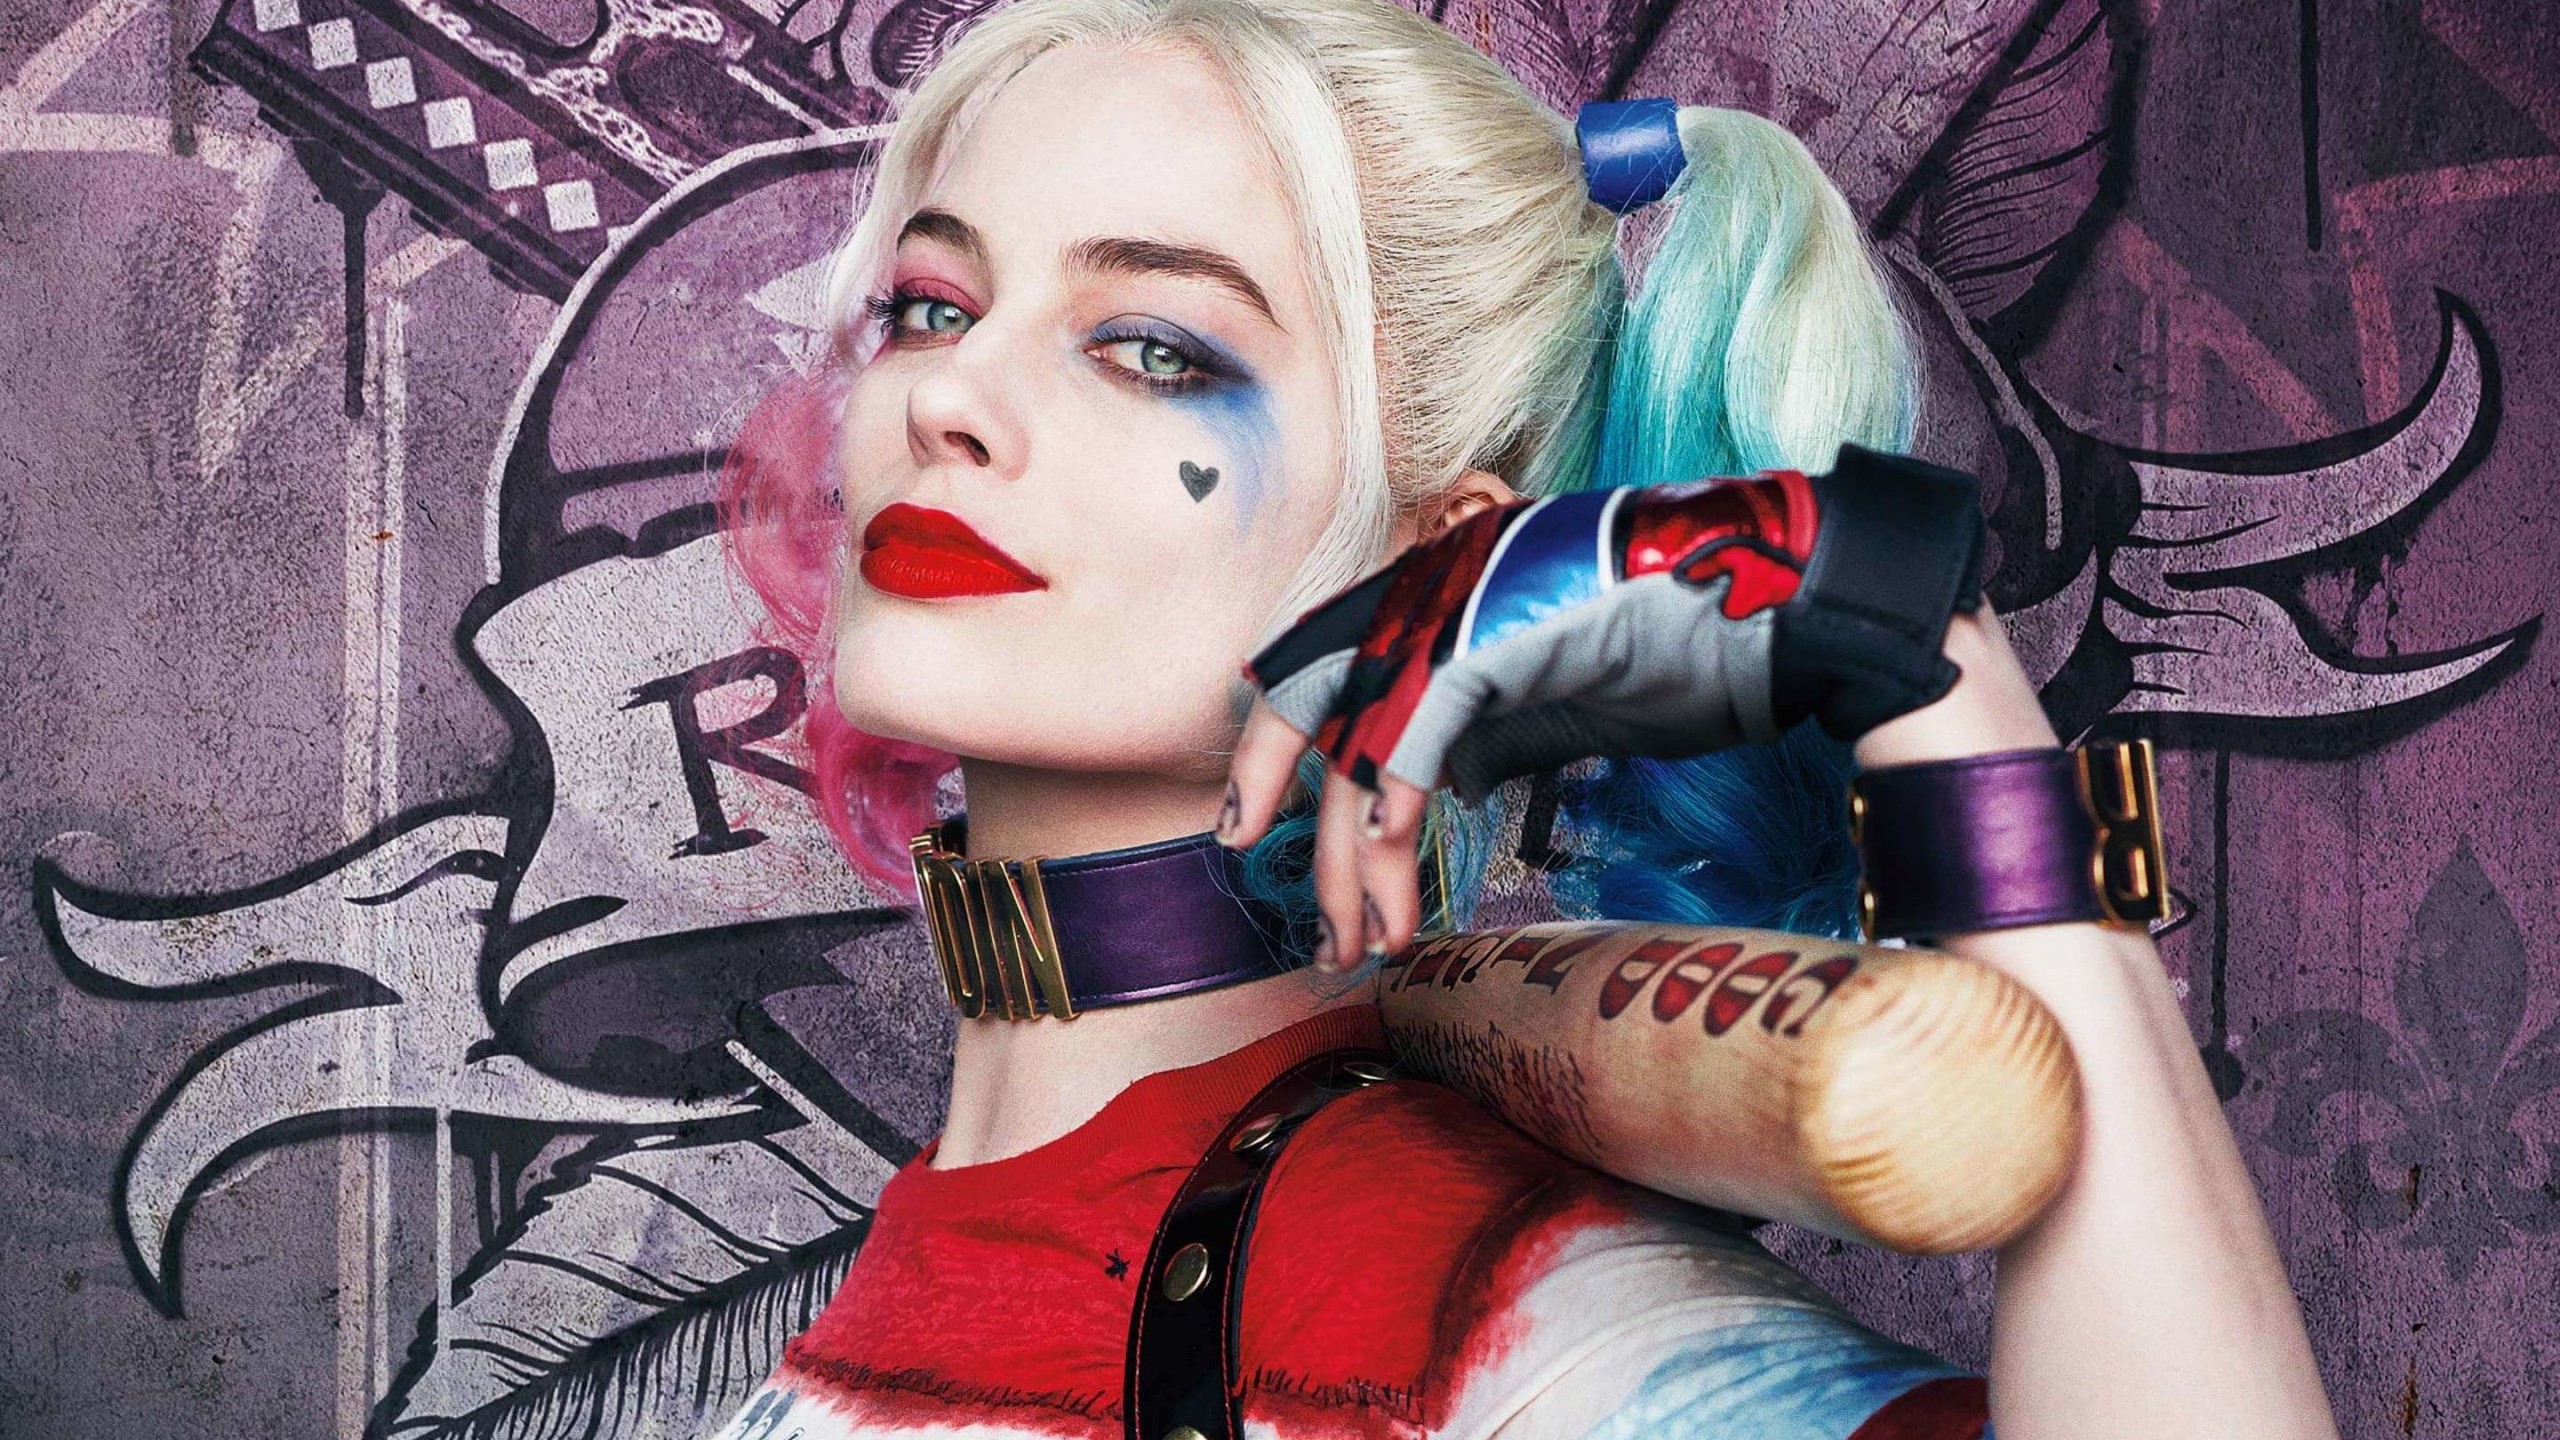 Harley Quinn - Suicide Squad Wallpaper for Desktop 2560x1440